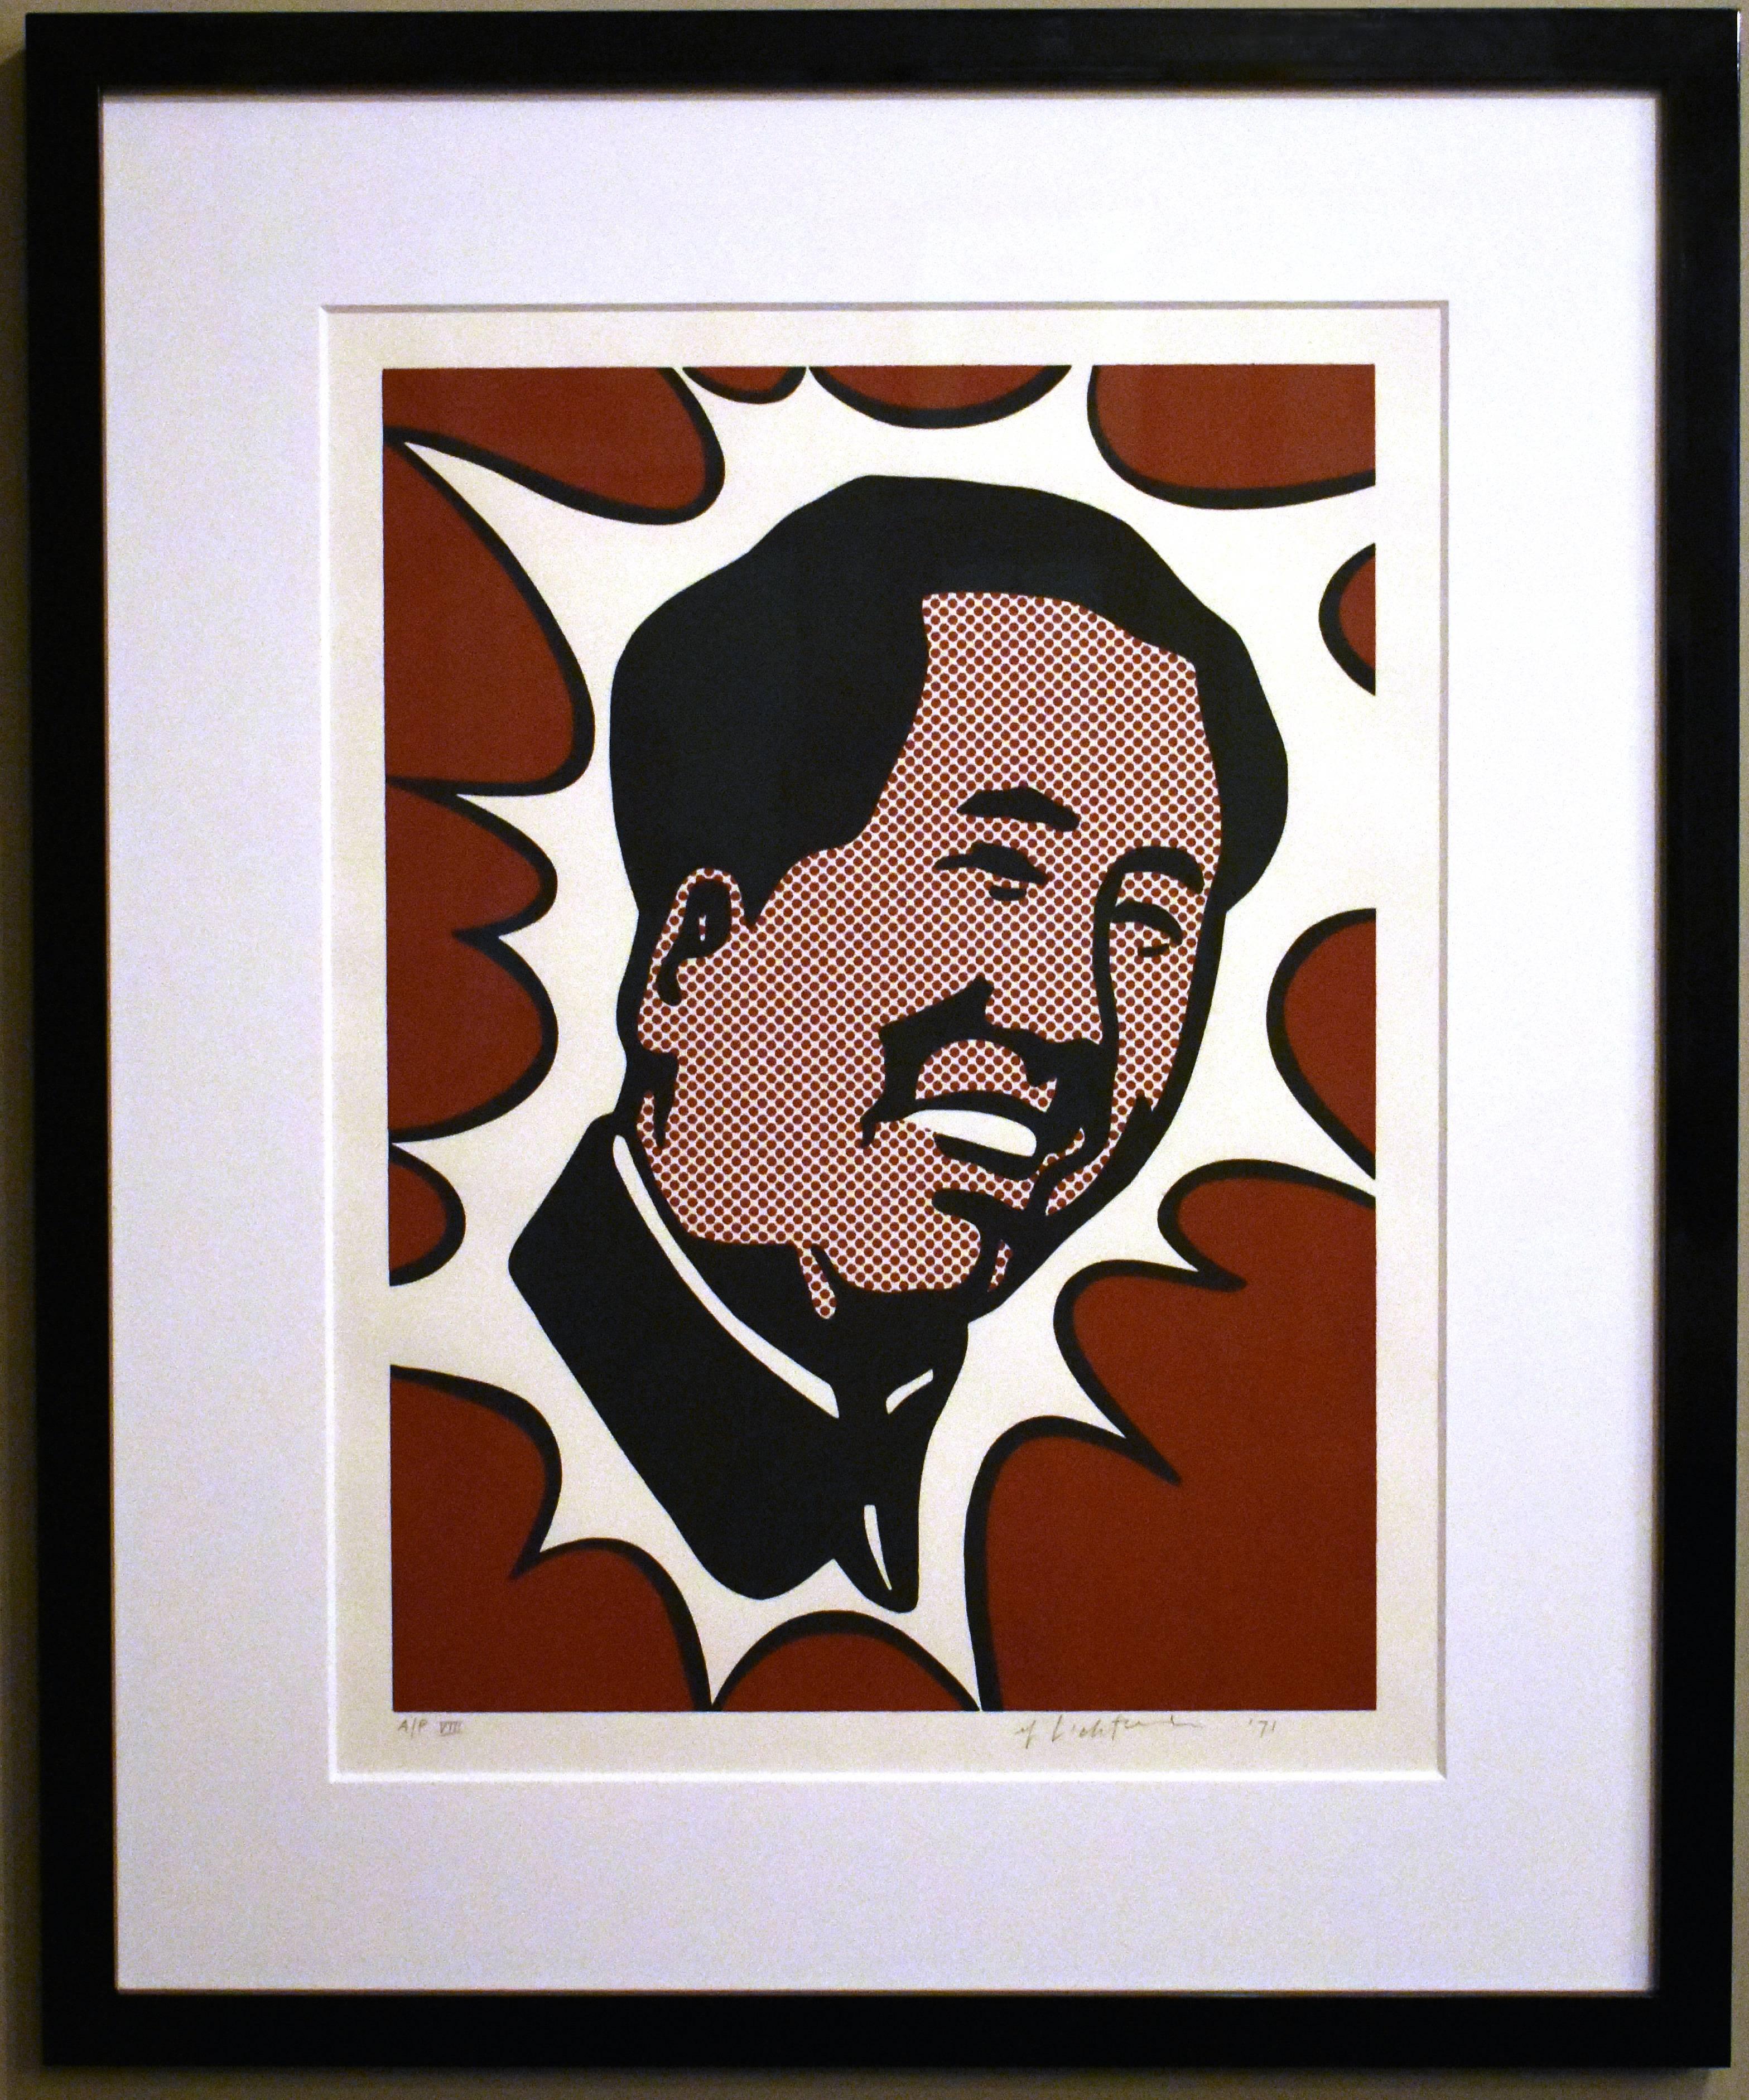 Mao - Print by Roy Lichtenstein